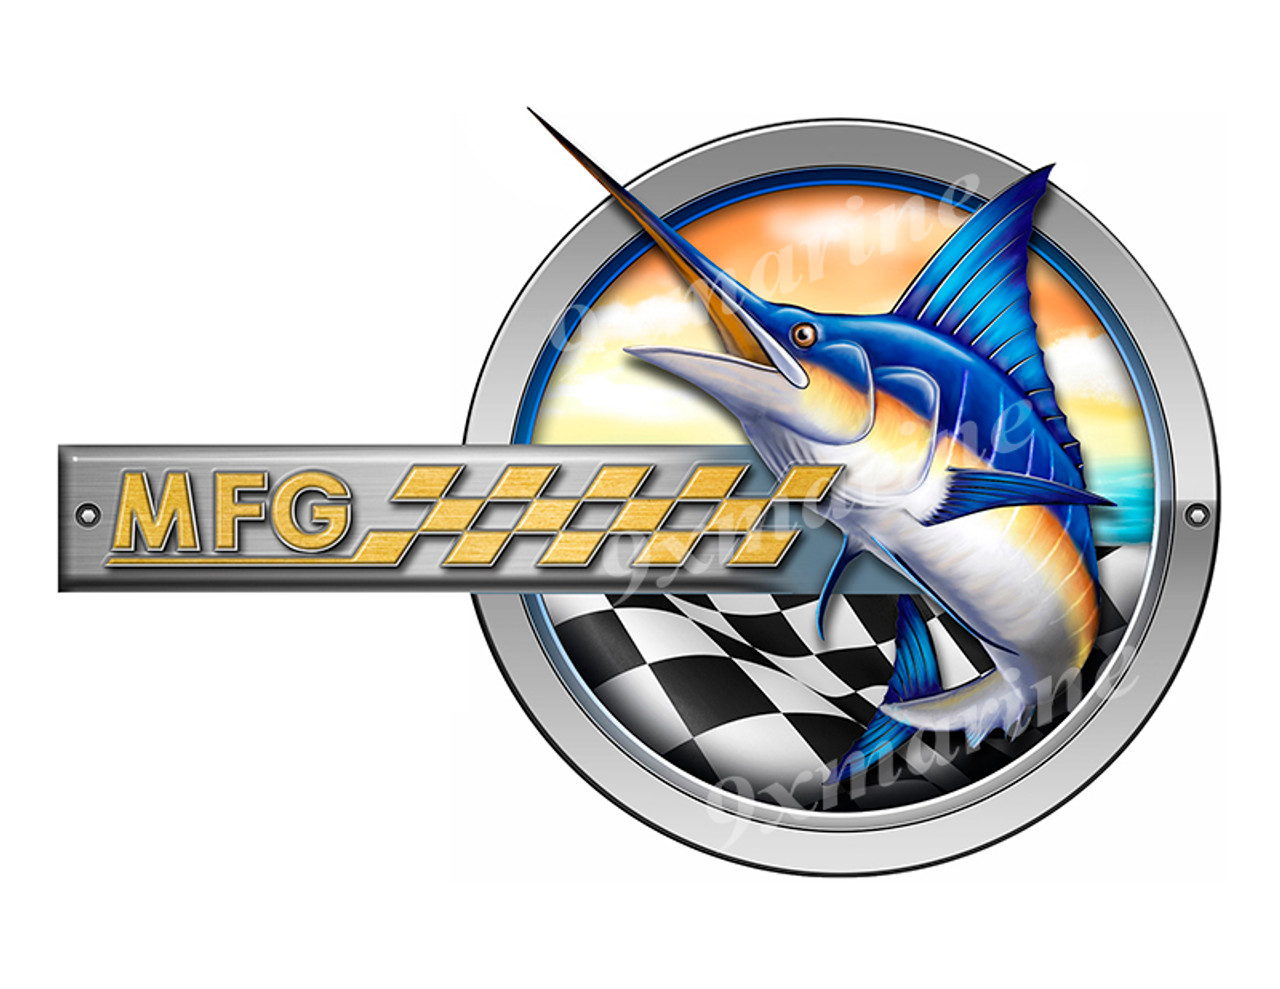 One MFG Marlin Round Designer Sticker 10"x6.5"